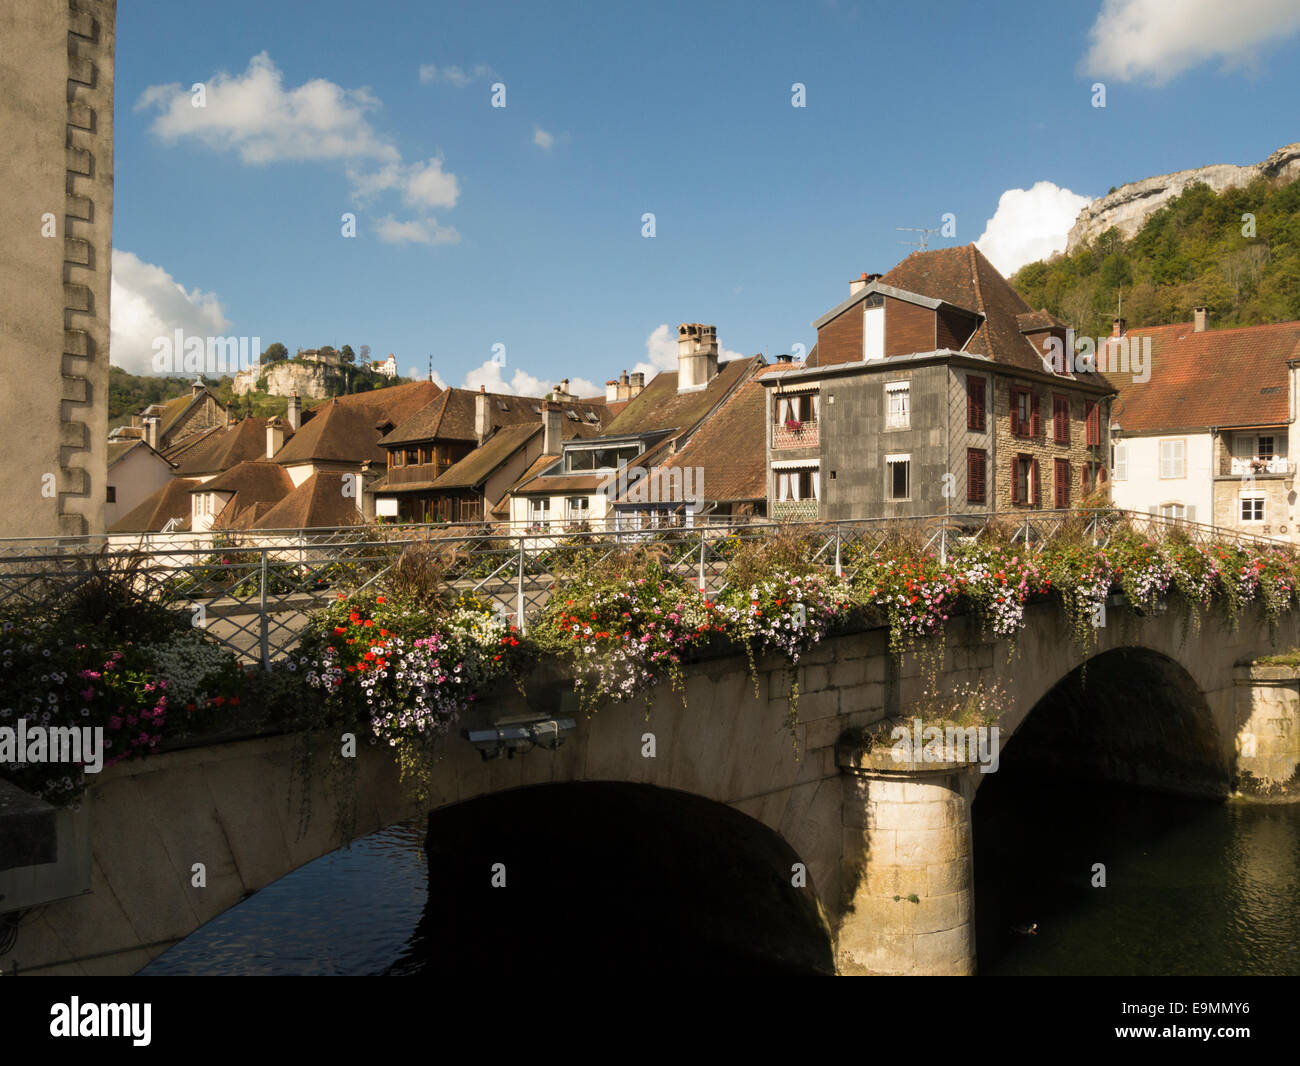 Stein gewölbt Straßenbrücke über den Fluss Loue in attraktiven historischen Dorf Ornans in Daubs Abteilung Frankreich EU Stockfoto